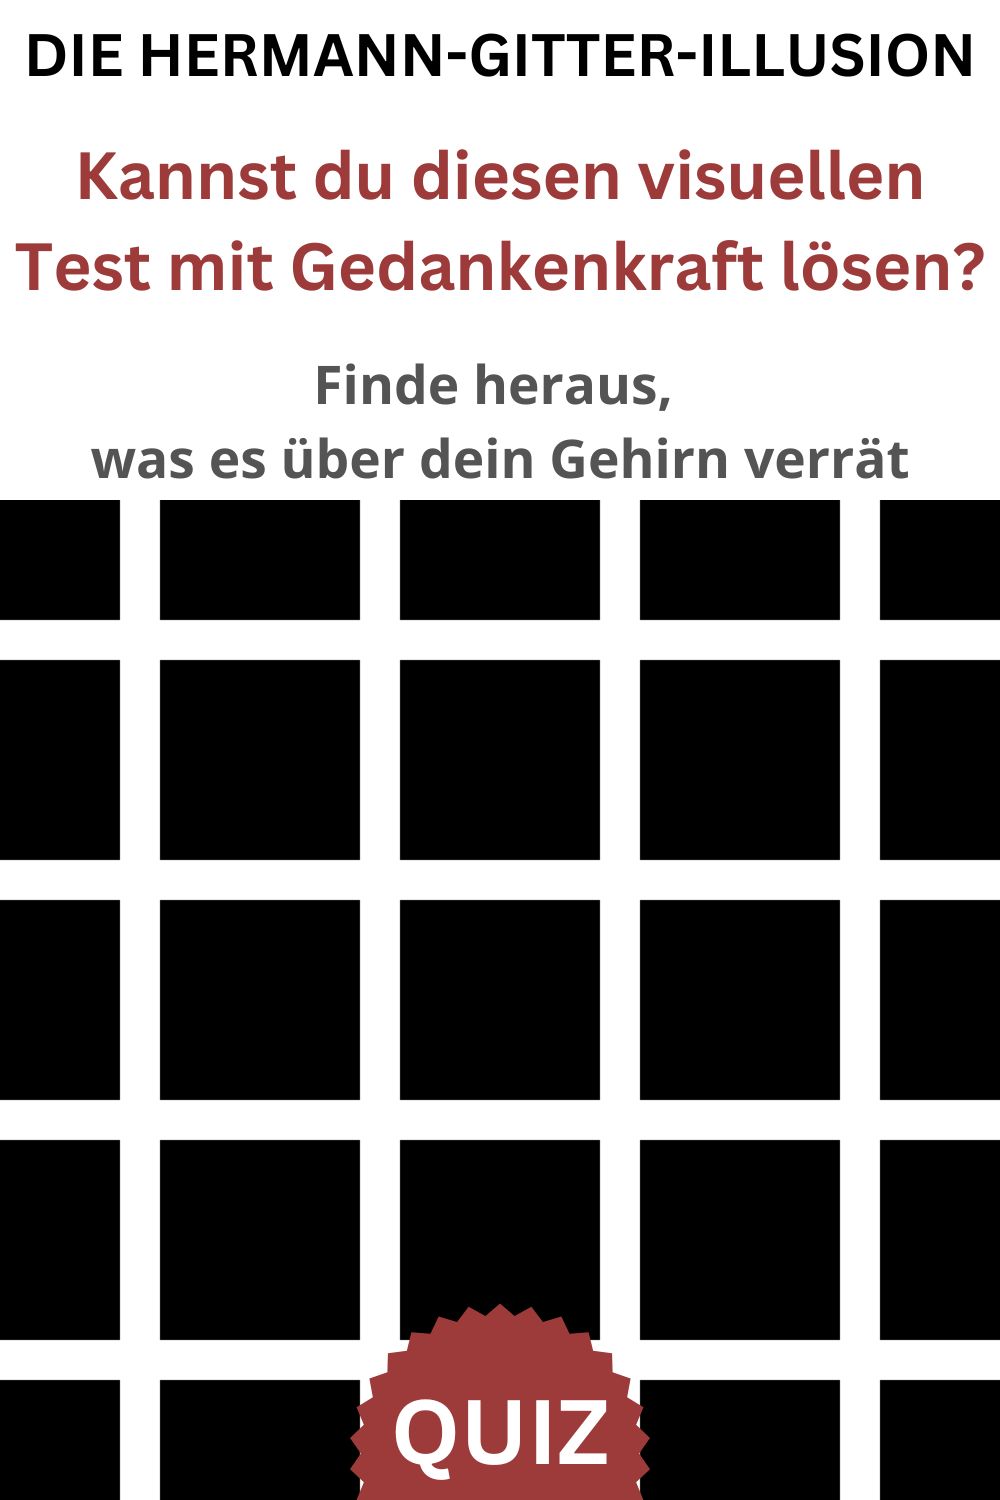 Die-Hermann-Gitter-Illusion.-Kannst-du-diesen-visuellen-Test-mit-Gedankenkraft-loesen